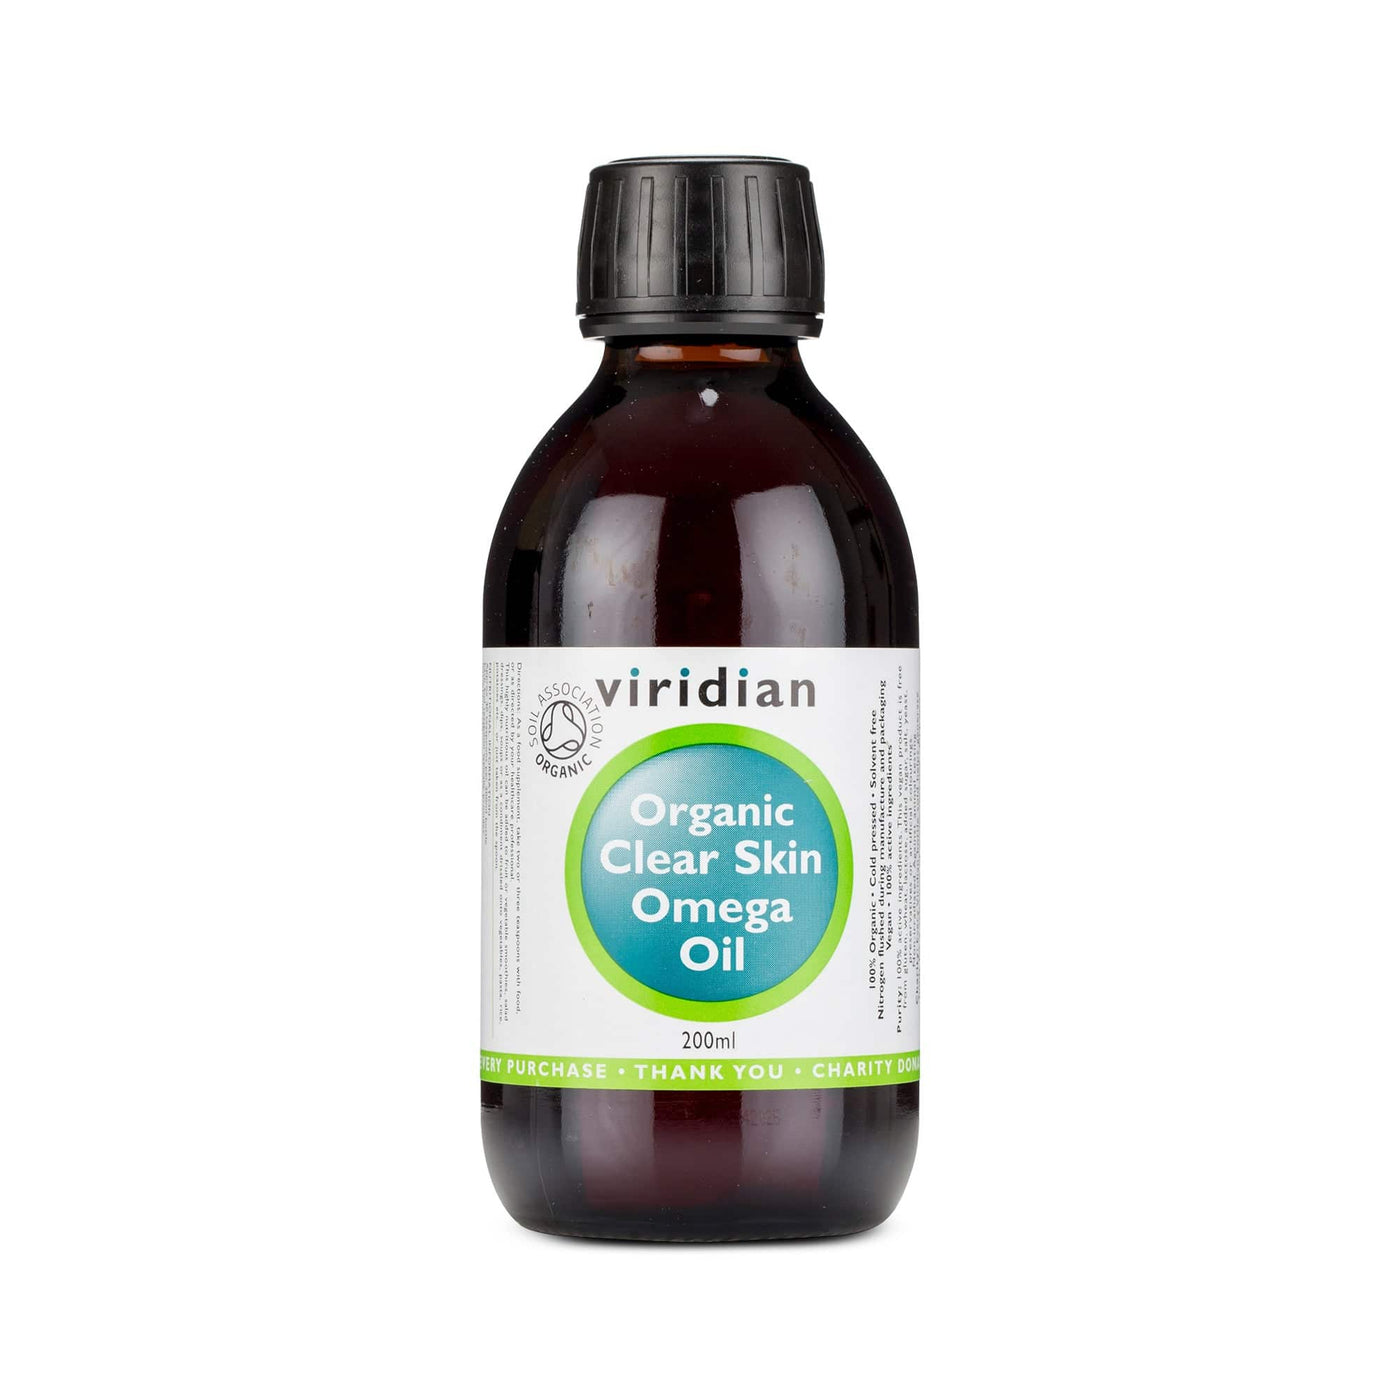 Neal's Yard Remedies Viridian Organic Clear Skin Omega Oil 200ml